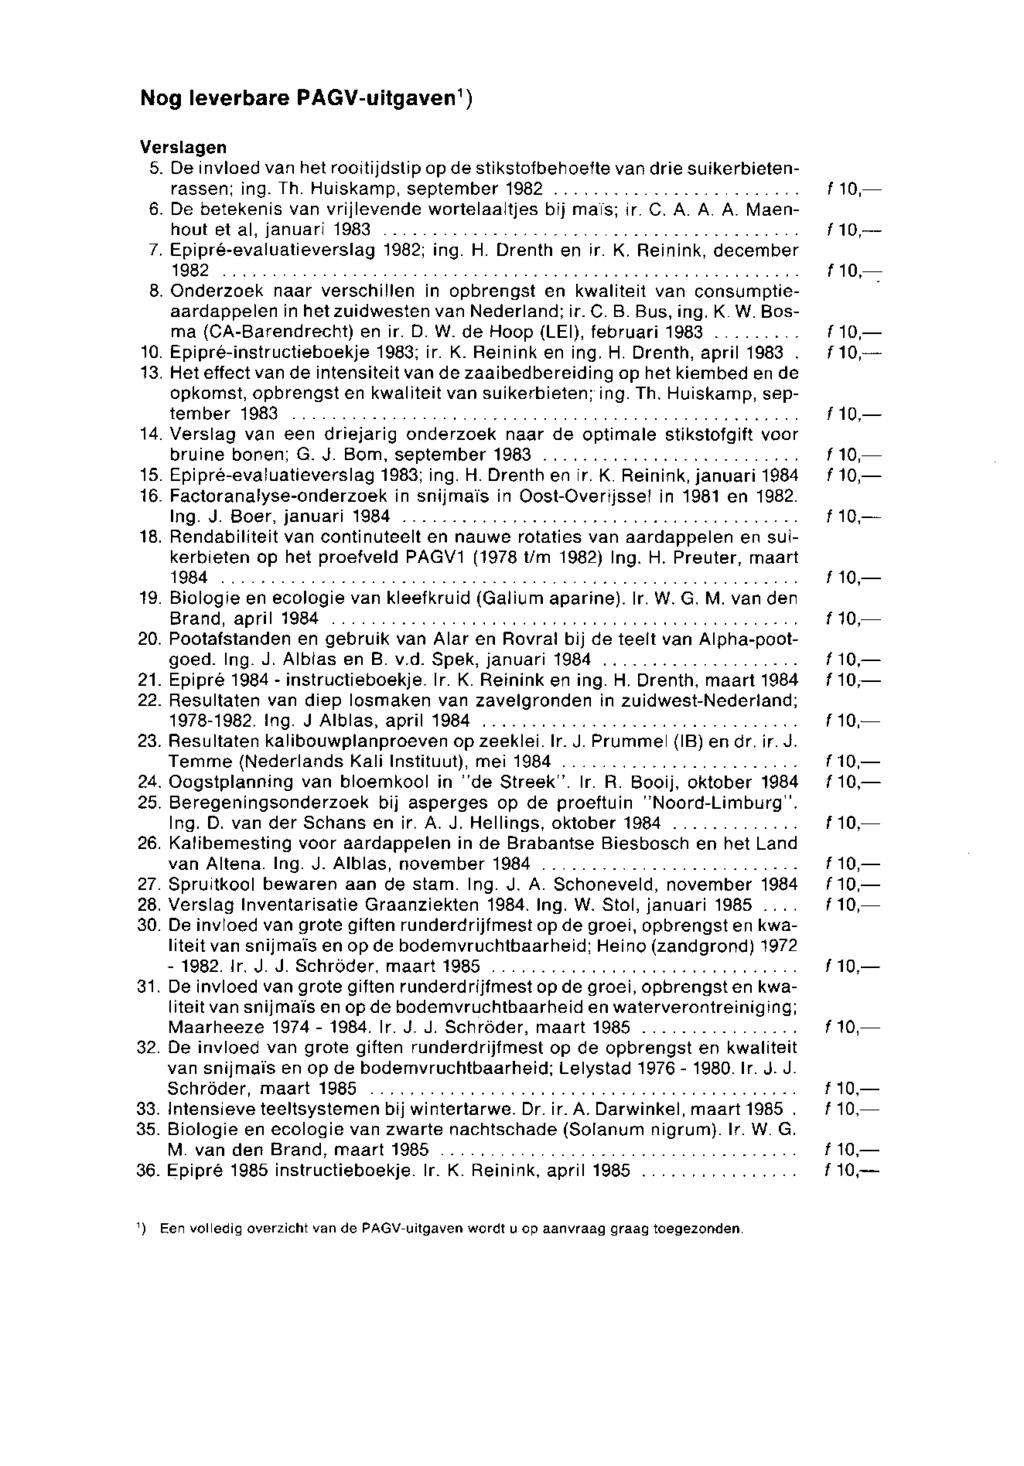 Nog leverbare PAGV-uitgaven 1 ) Verslagen 5. De invloed van het rooitijdstip op de stikstofbehoefte van drie suikerbietenrassen; ing. Th. Huiskamp, september 1982 f 10,- 6.